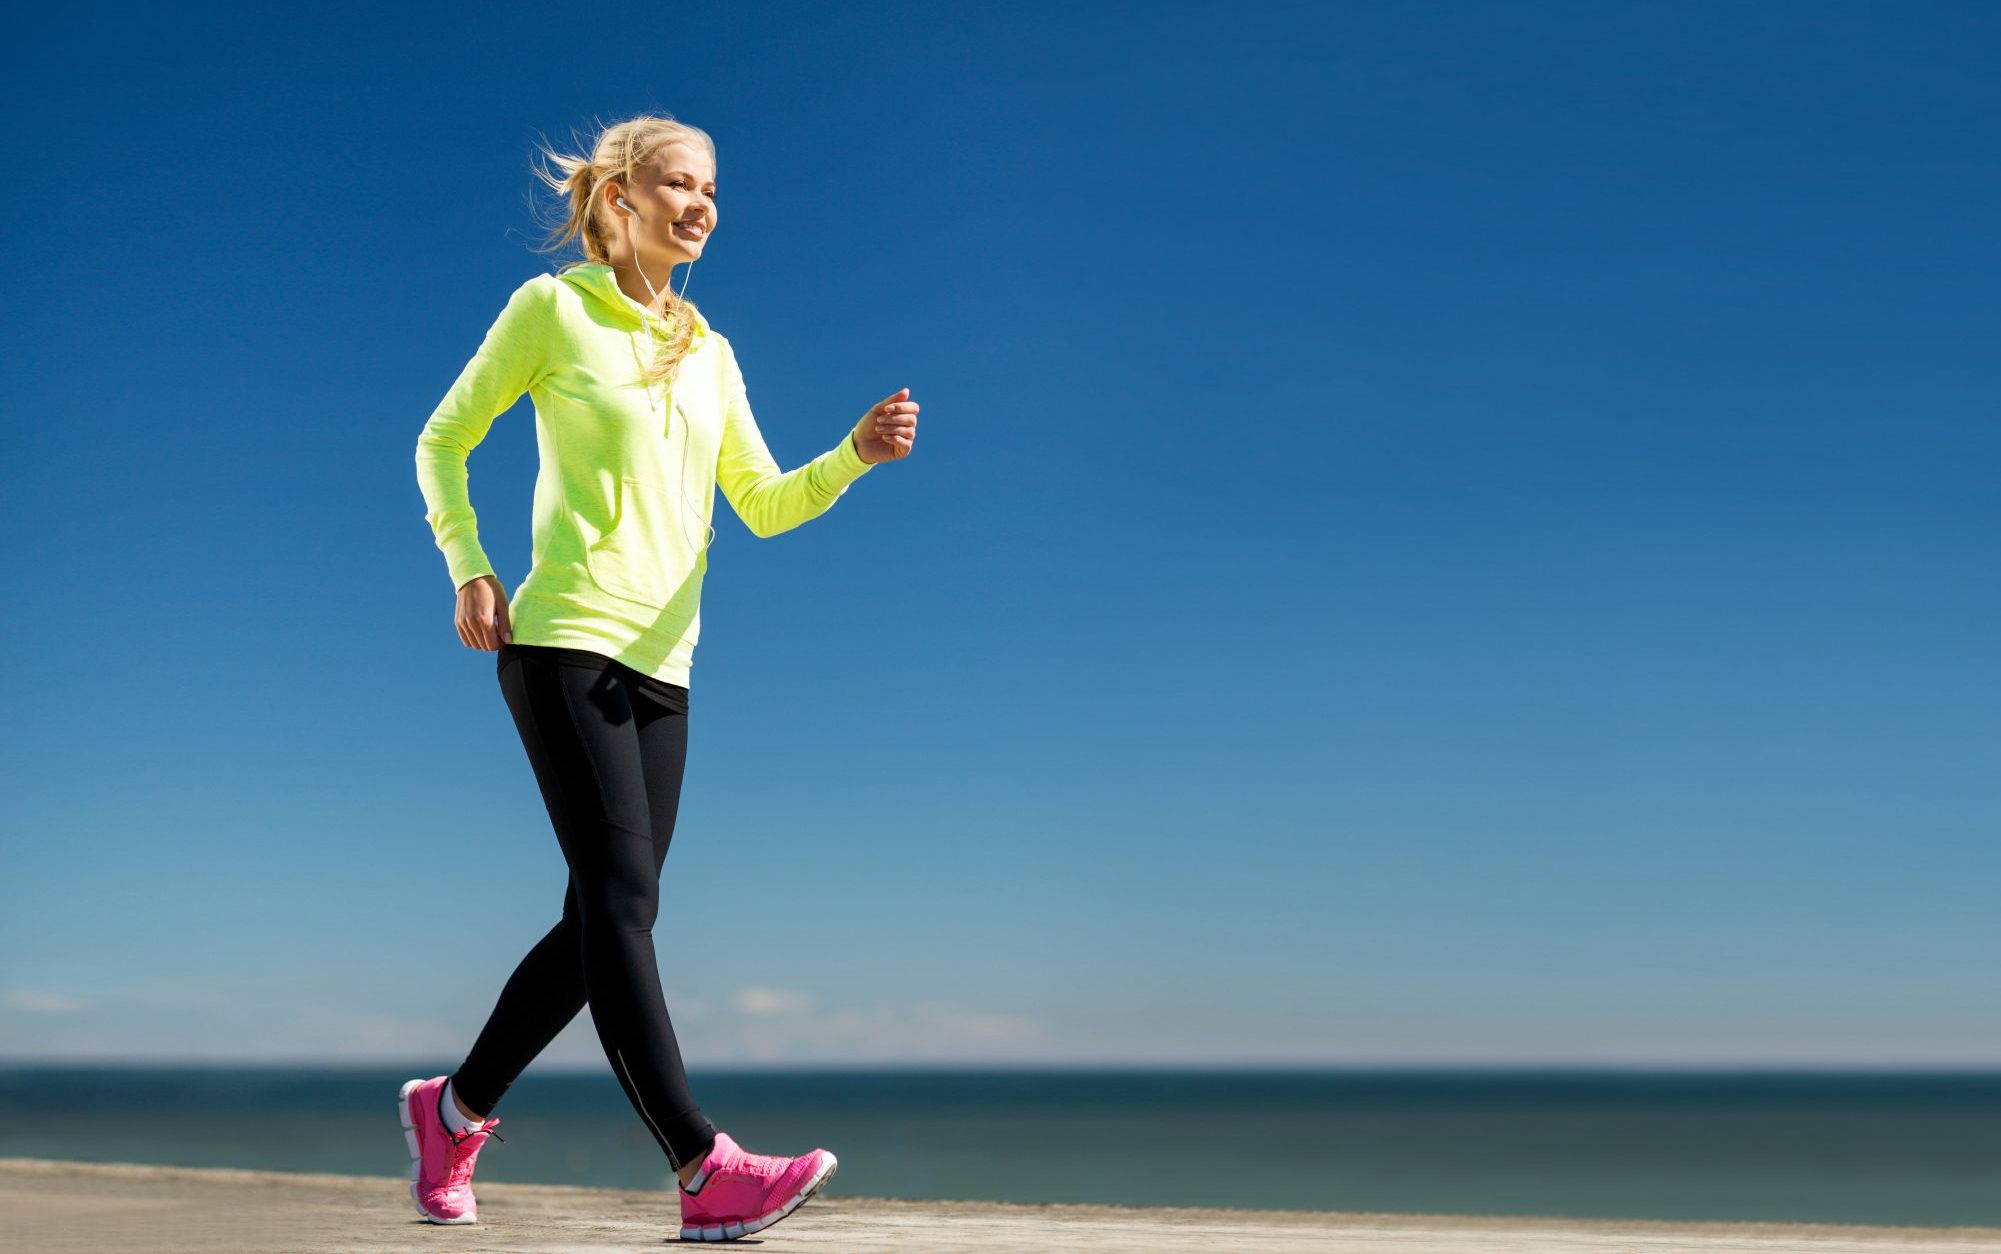 ممارسة المشي تقلل من التوتر وتزيد النشاط والطاقة في الجسم